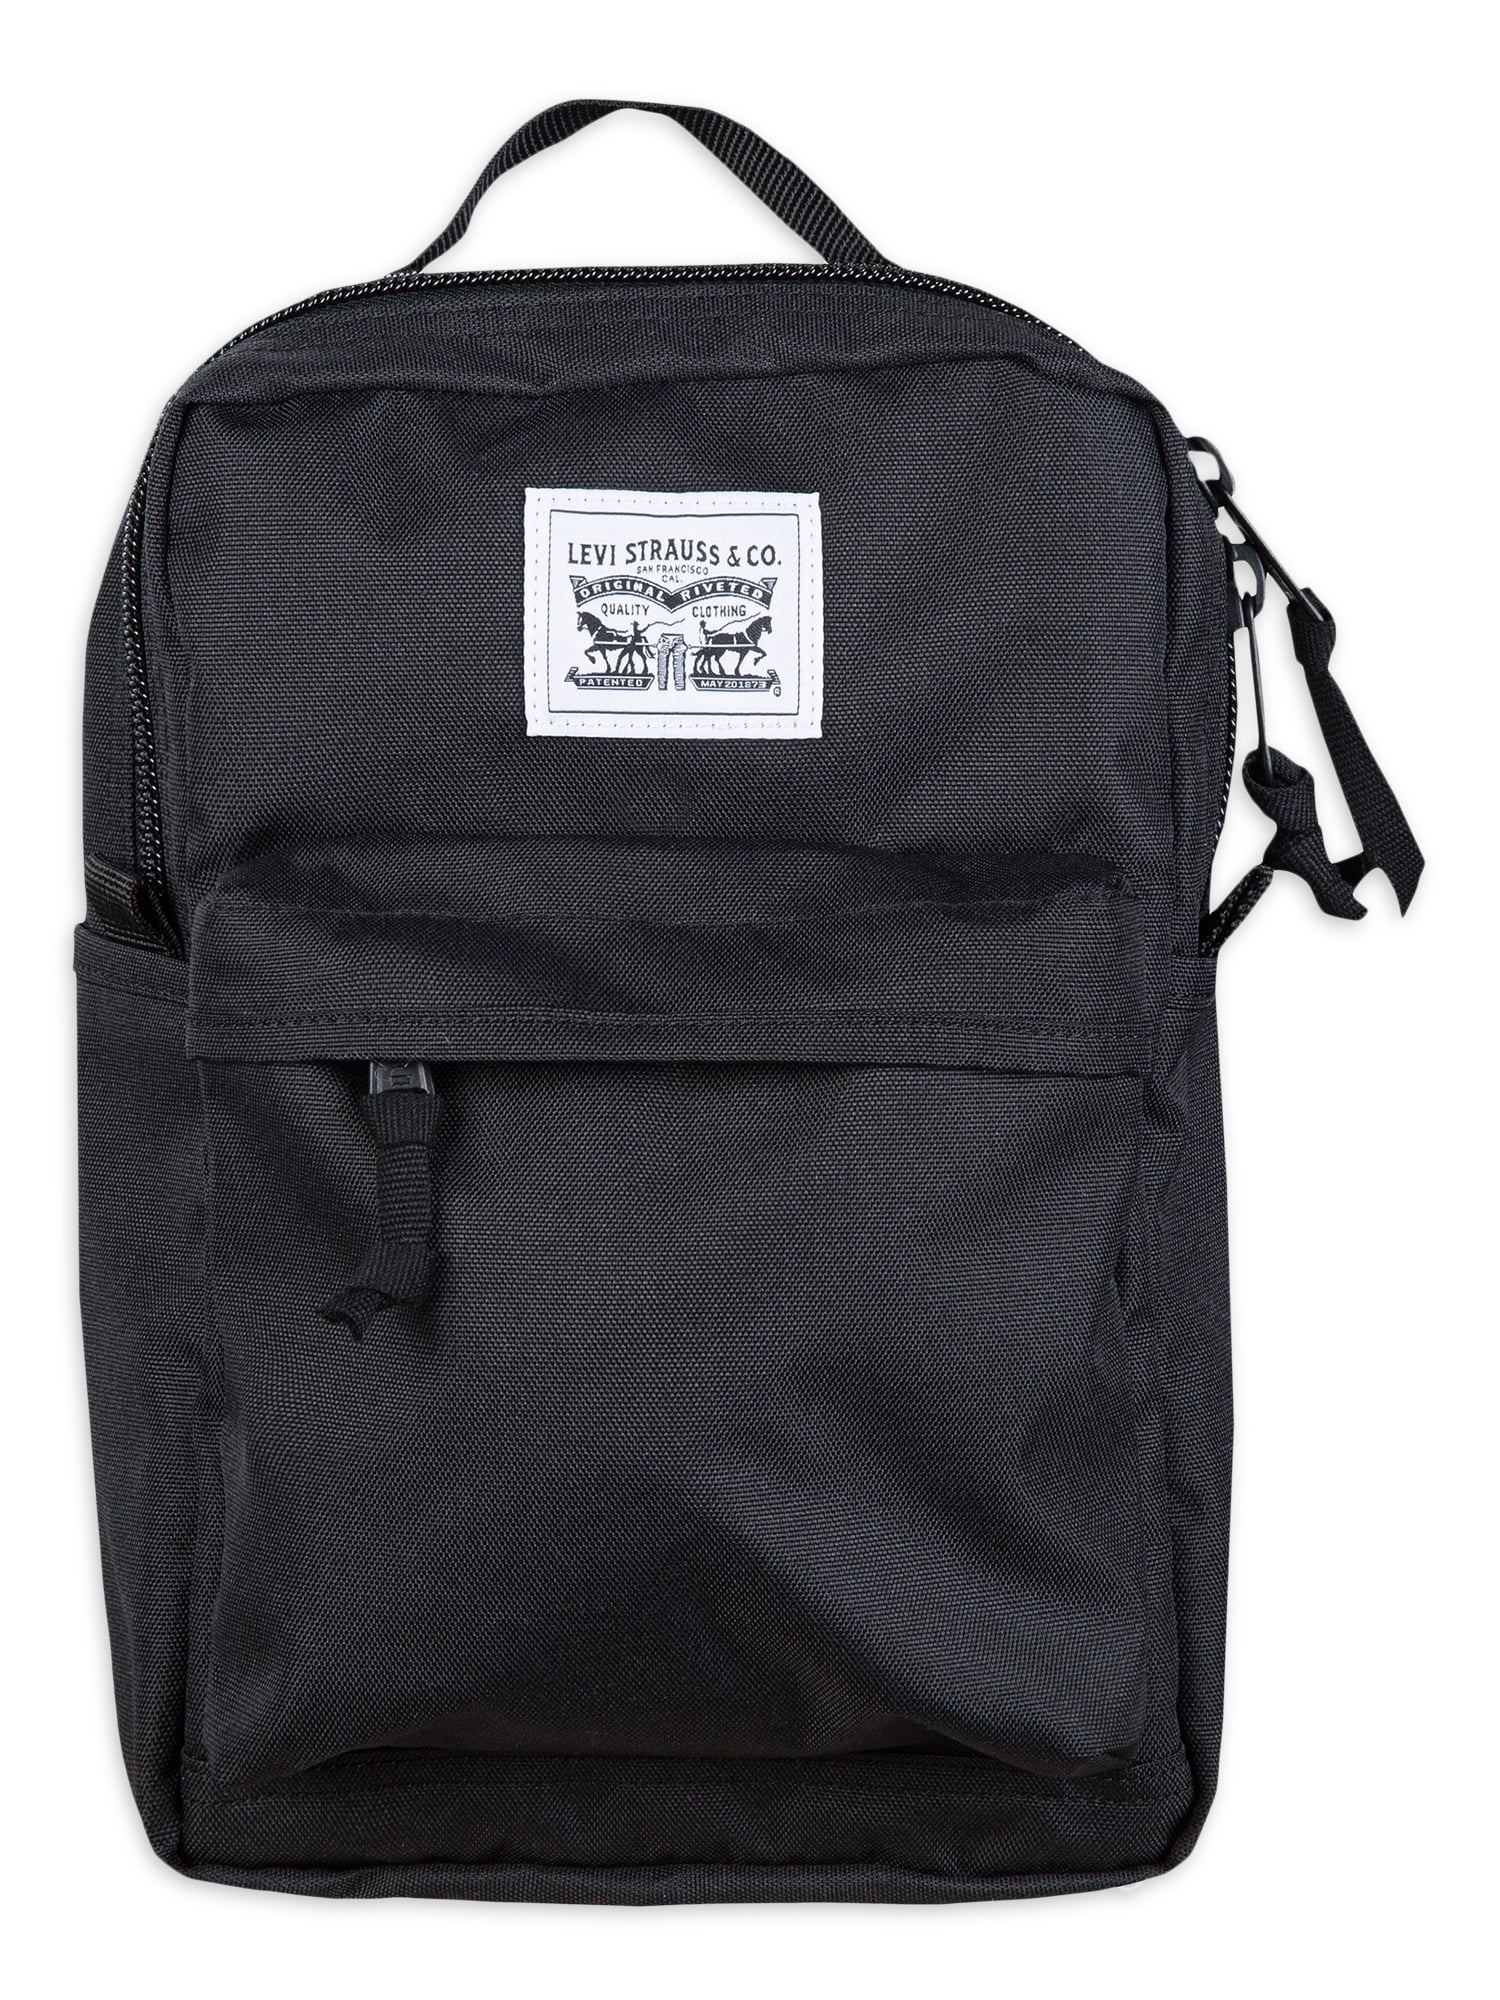 Levi's L-Pack Backpack, Black - Walmart.com